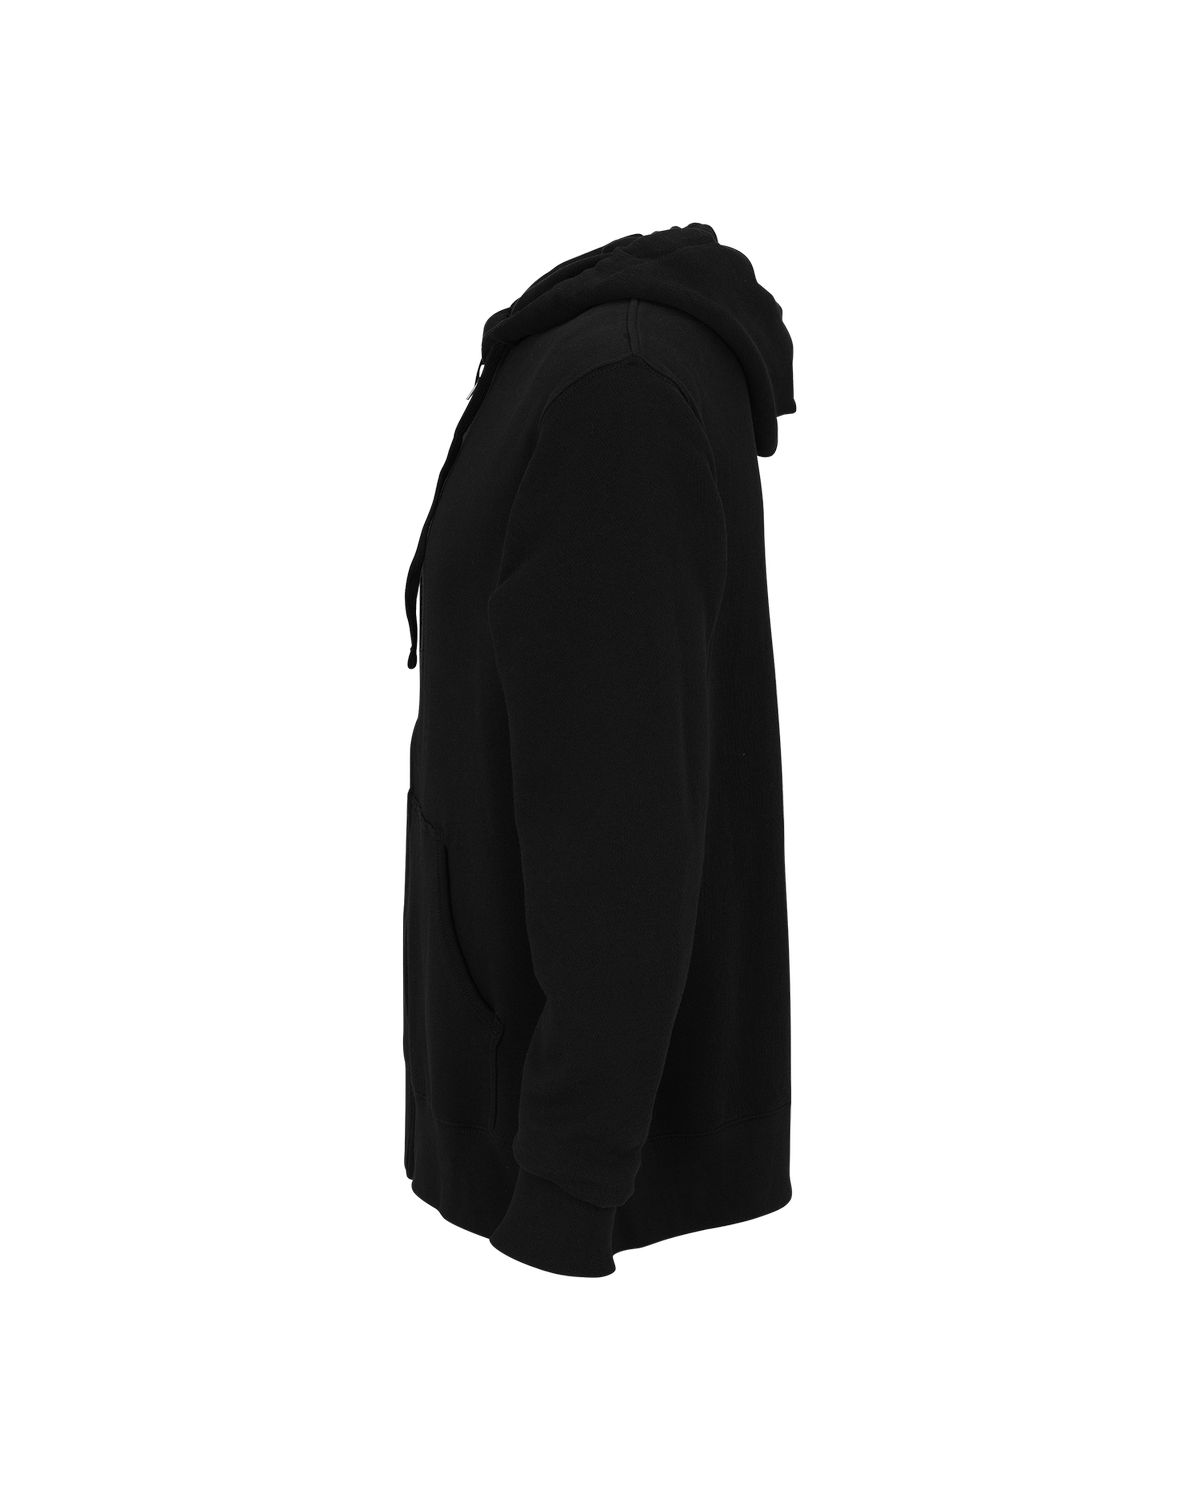 'Vantage 3289 Premium Lightweight Fleece Full-Zip Hoodie'